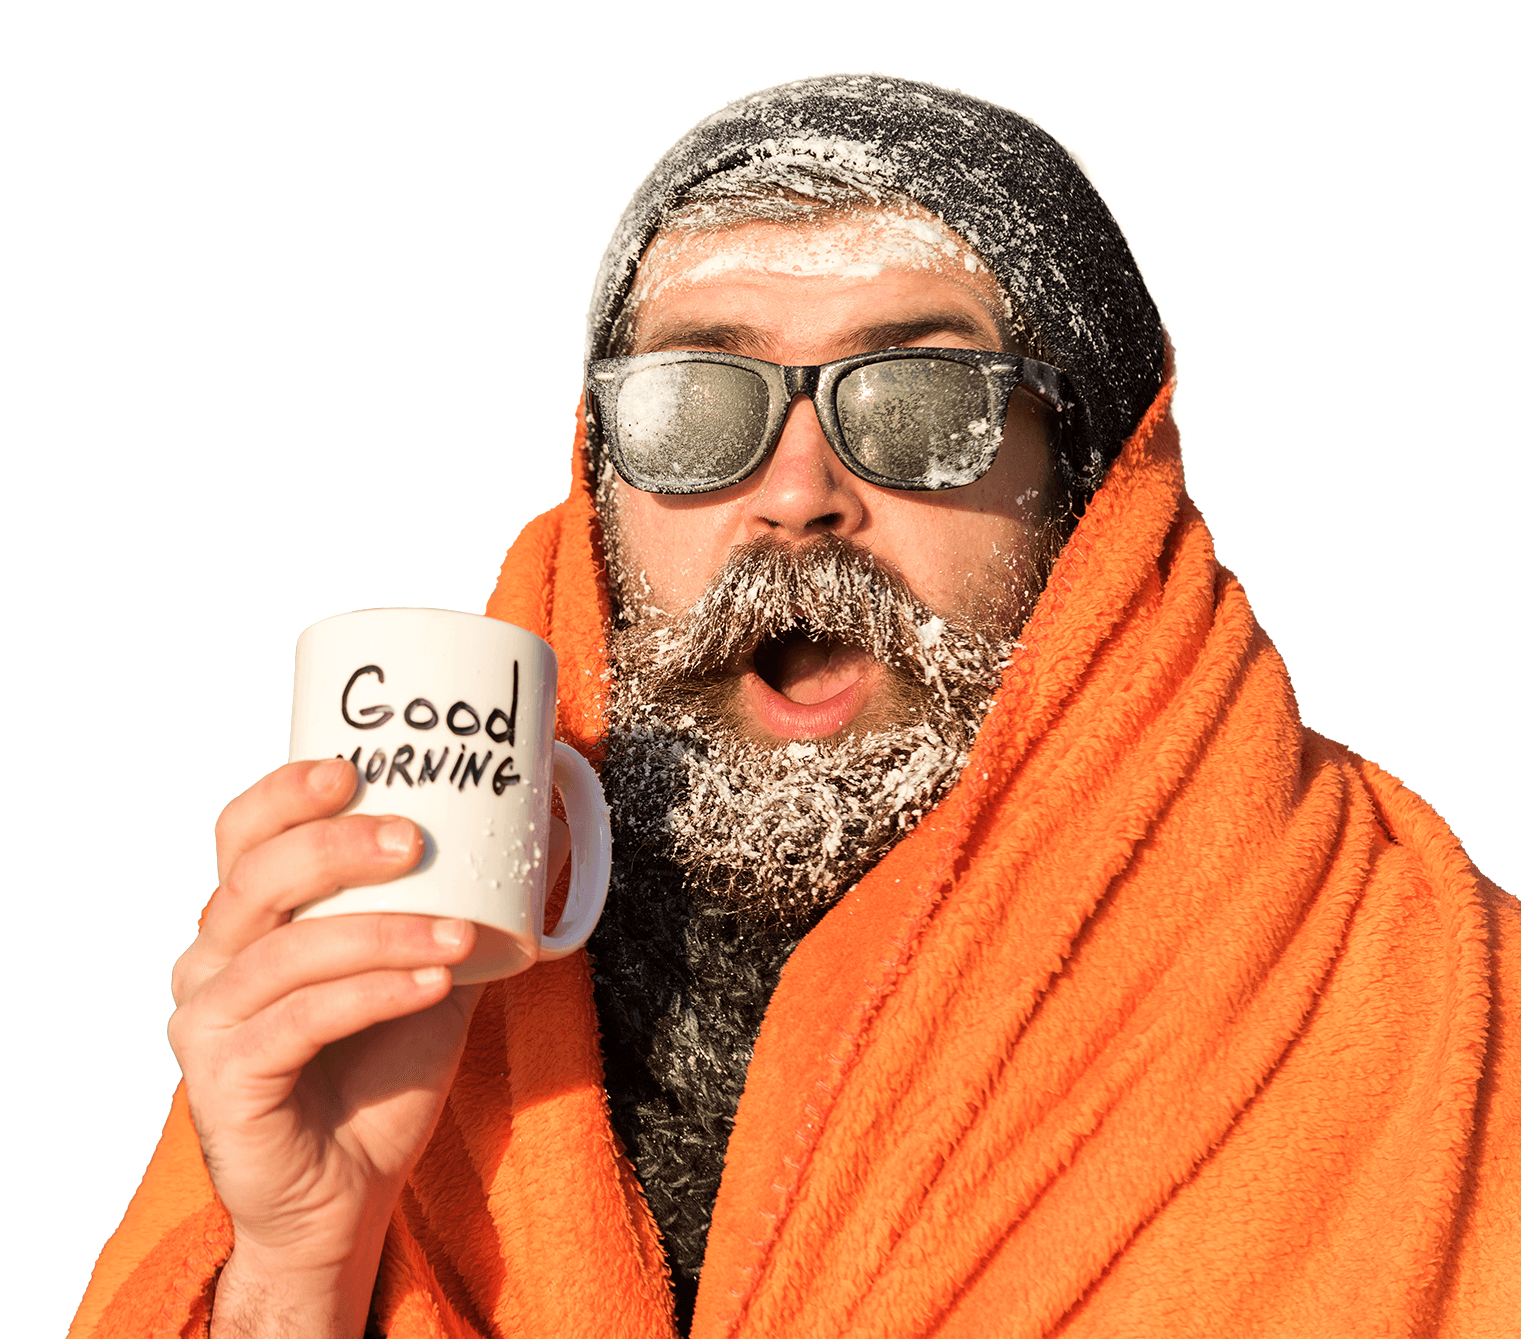 Image détourée d'un homme barbu, couvert de givre, avec un plaid orange, un bonnet noir, des lunettes de soleil et un mug indiquant Good Morning